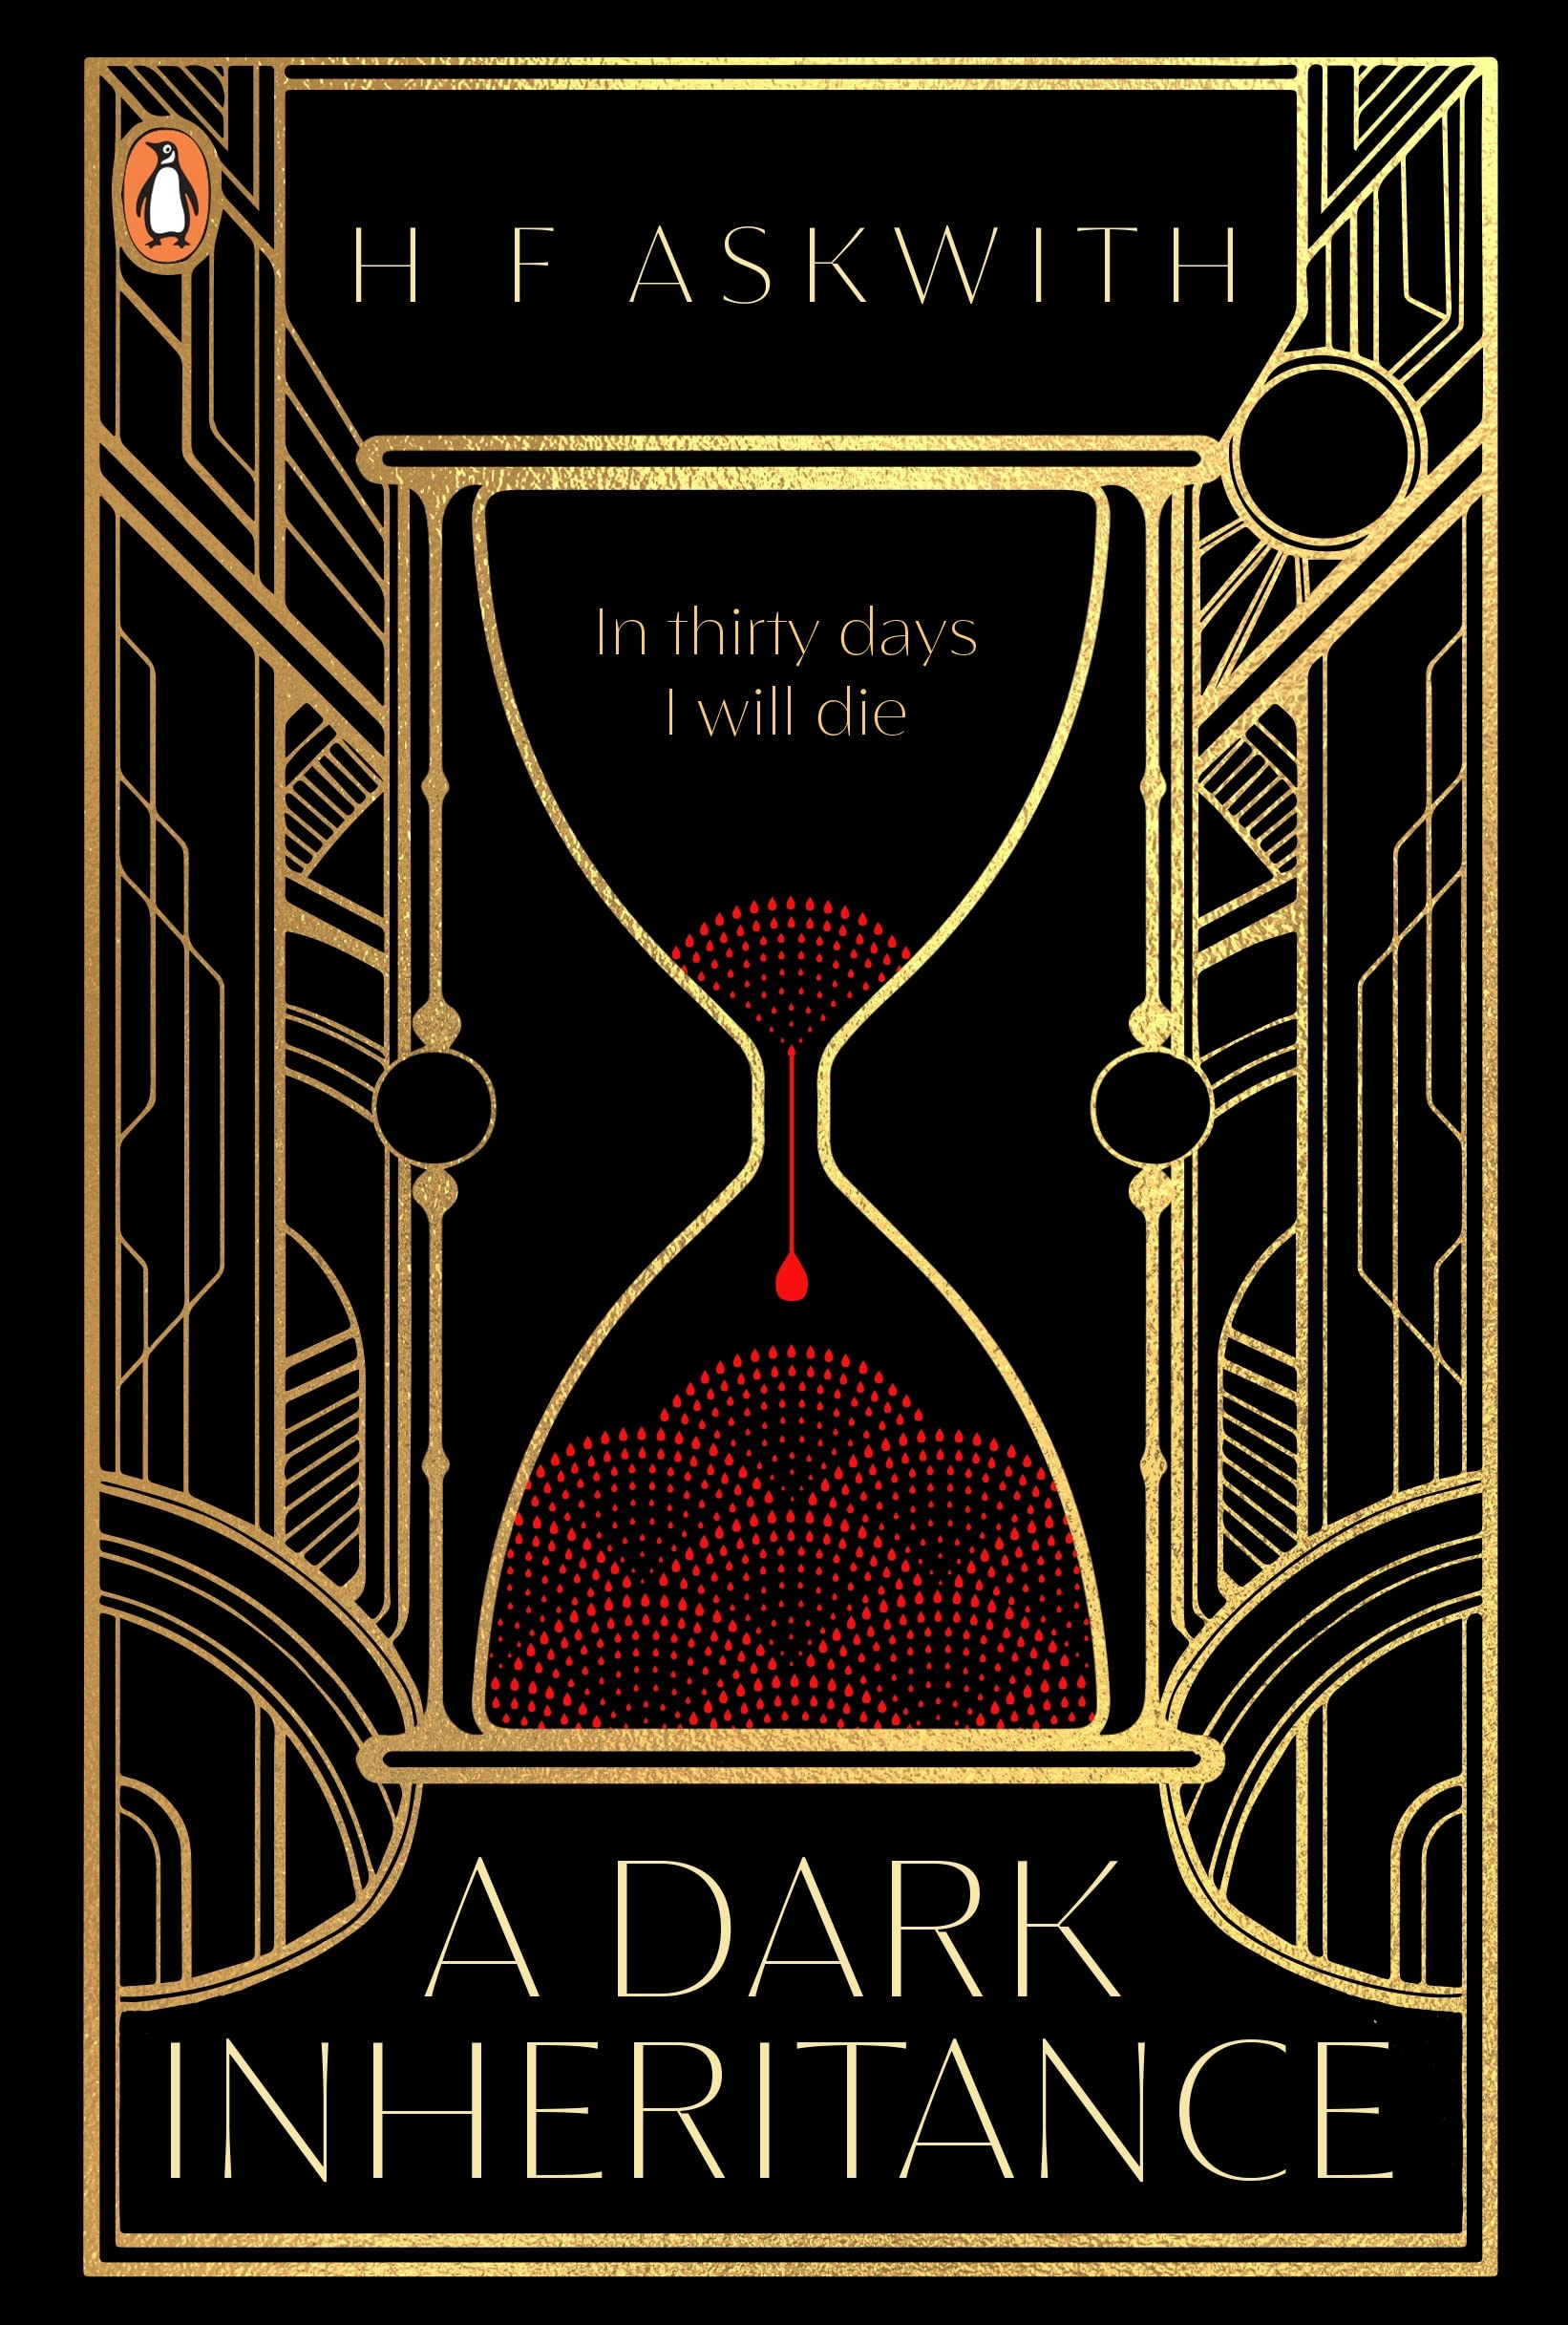 A Dark Inheritance | H. F. Askwith